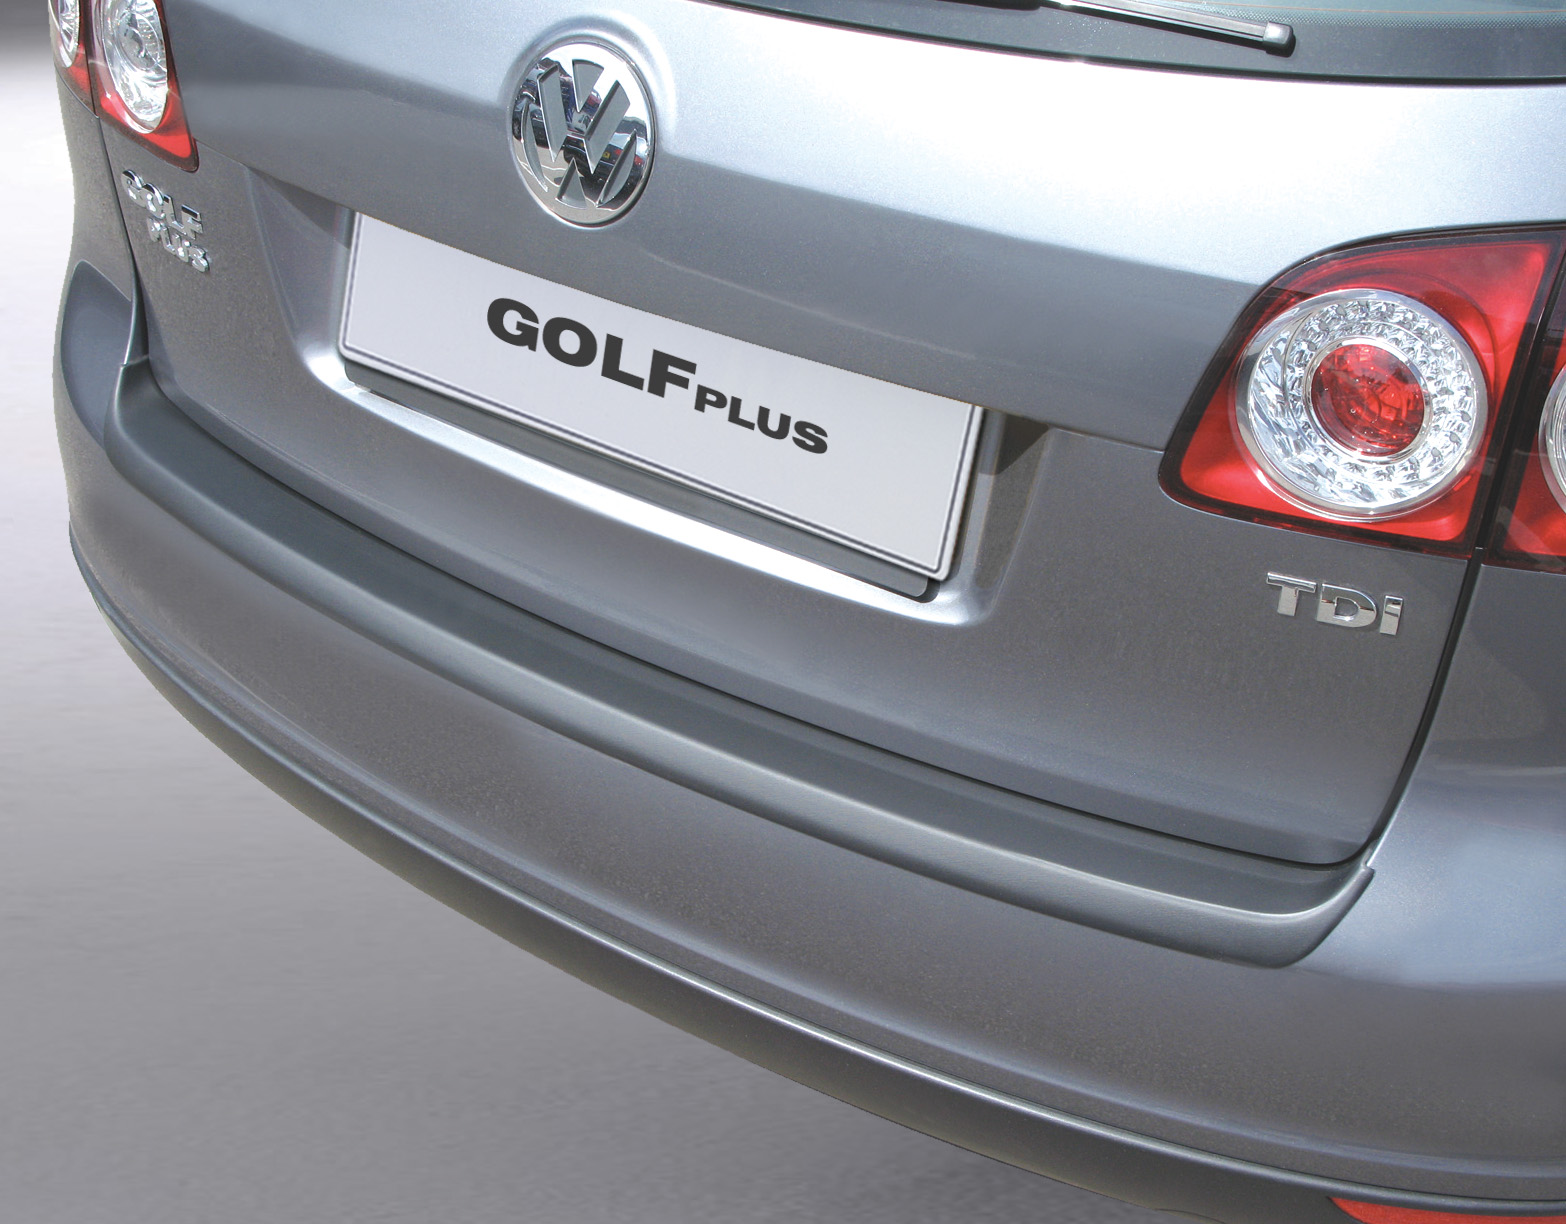 Ladekantenschutz mit Abkantung passend für Volkswagen Golf Plus V, VW MK 5  ab BJ. 01.2005 bis 02.2009 ABS Farbe schwarz